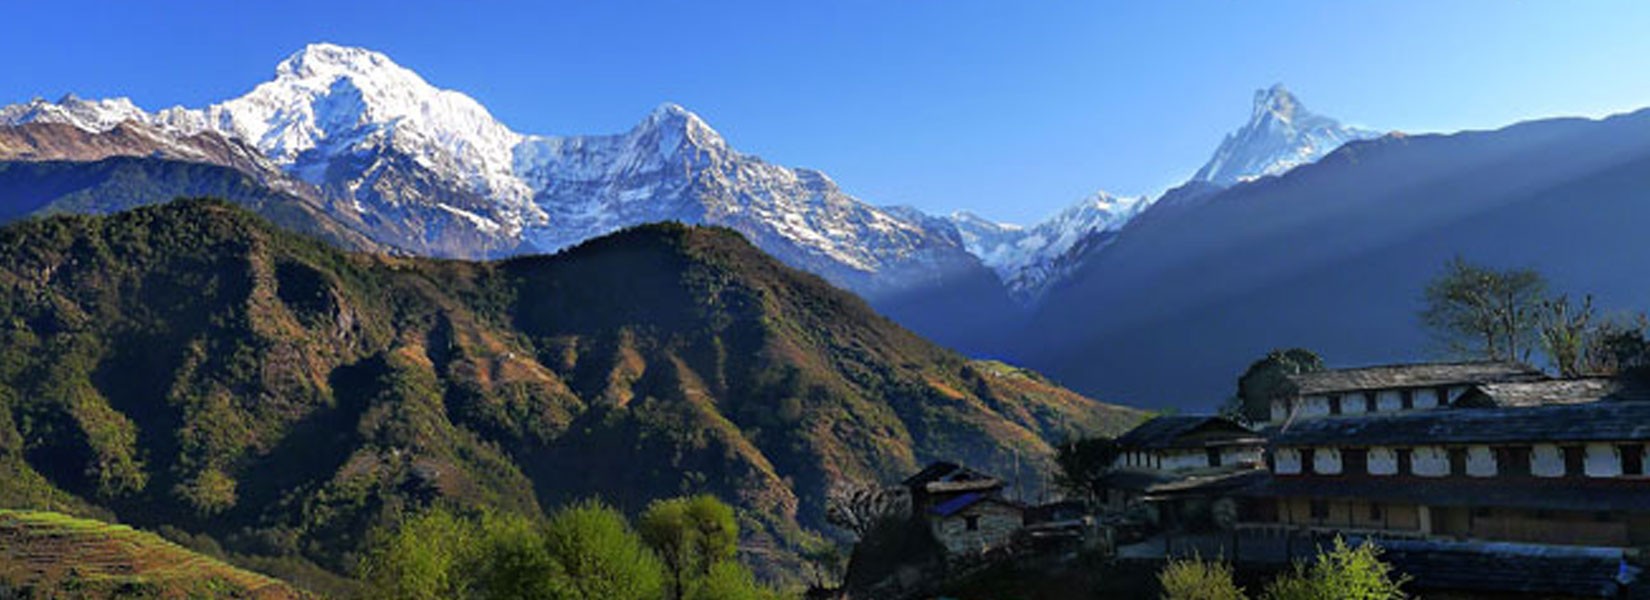 Nepal Village Trekking